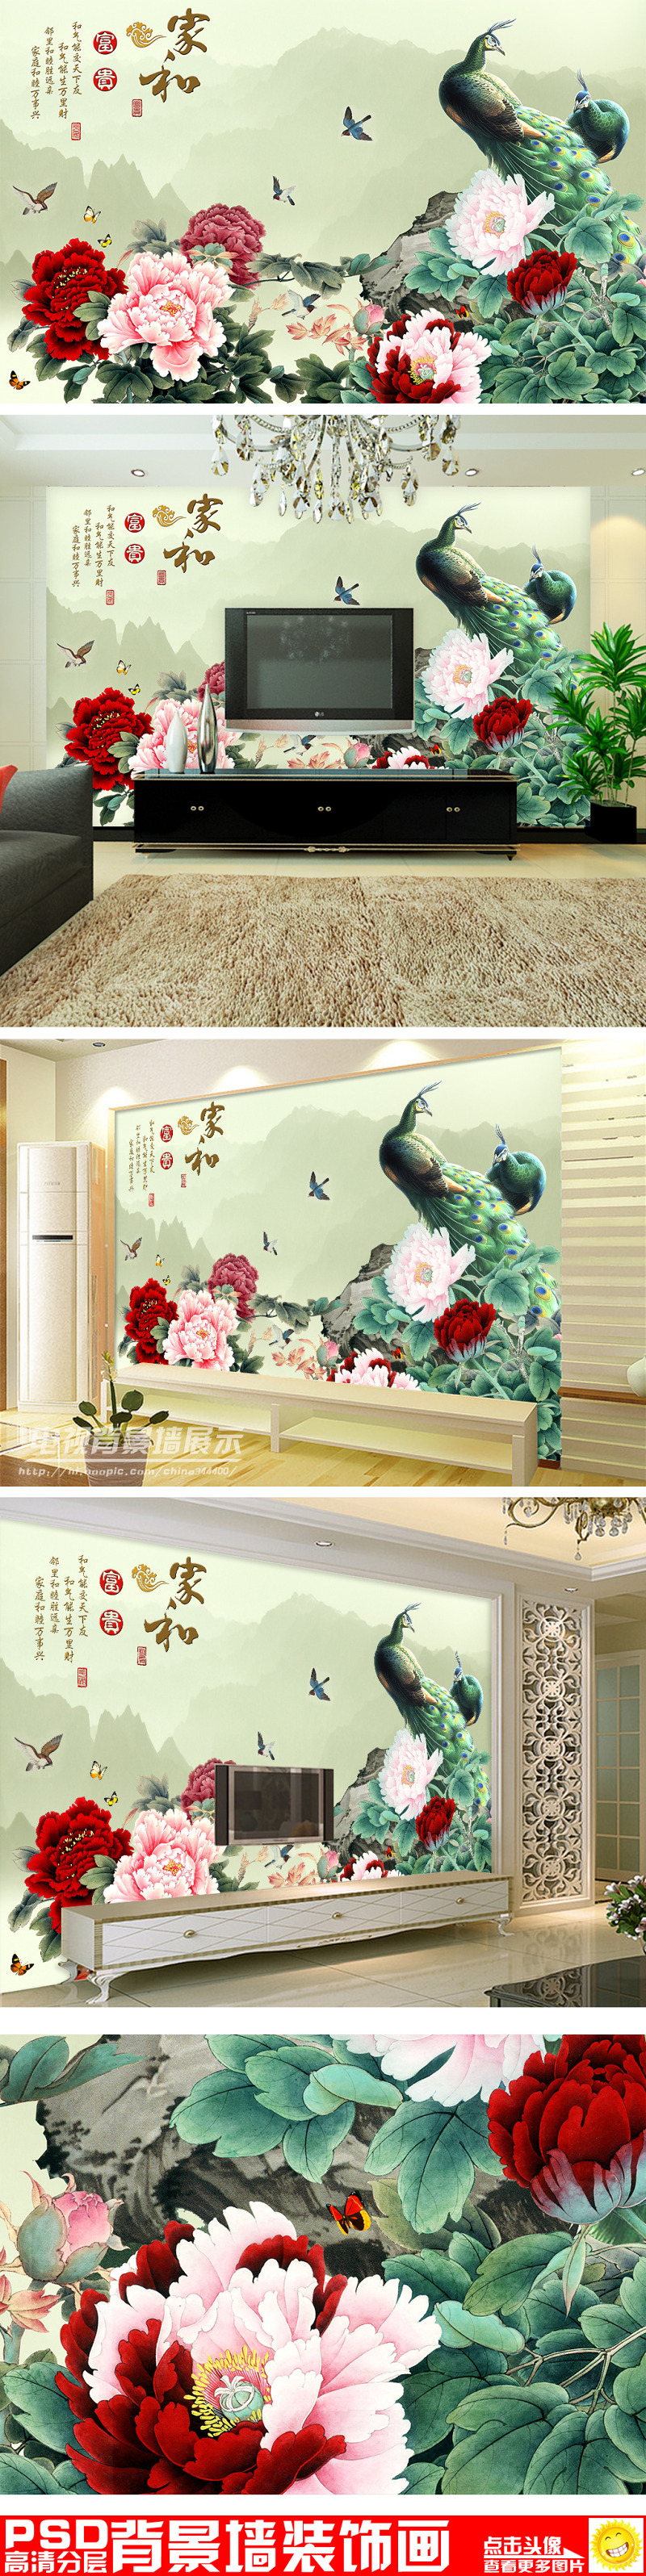 家和富贵牡丹孔雀图中式电视背景墙